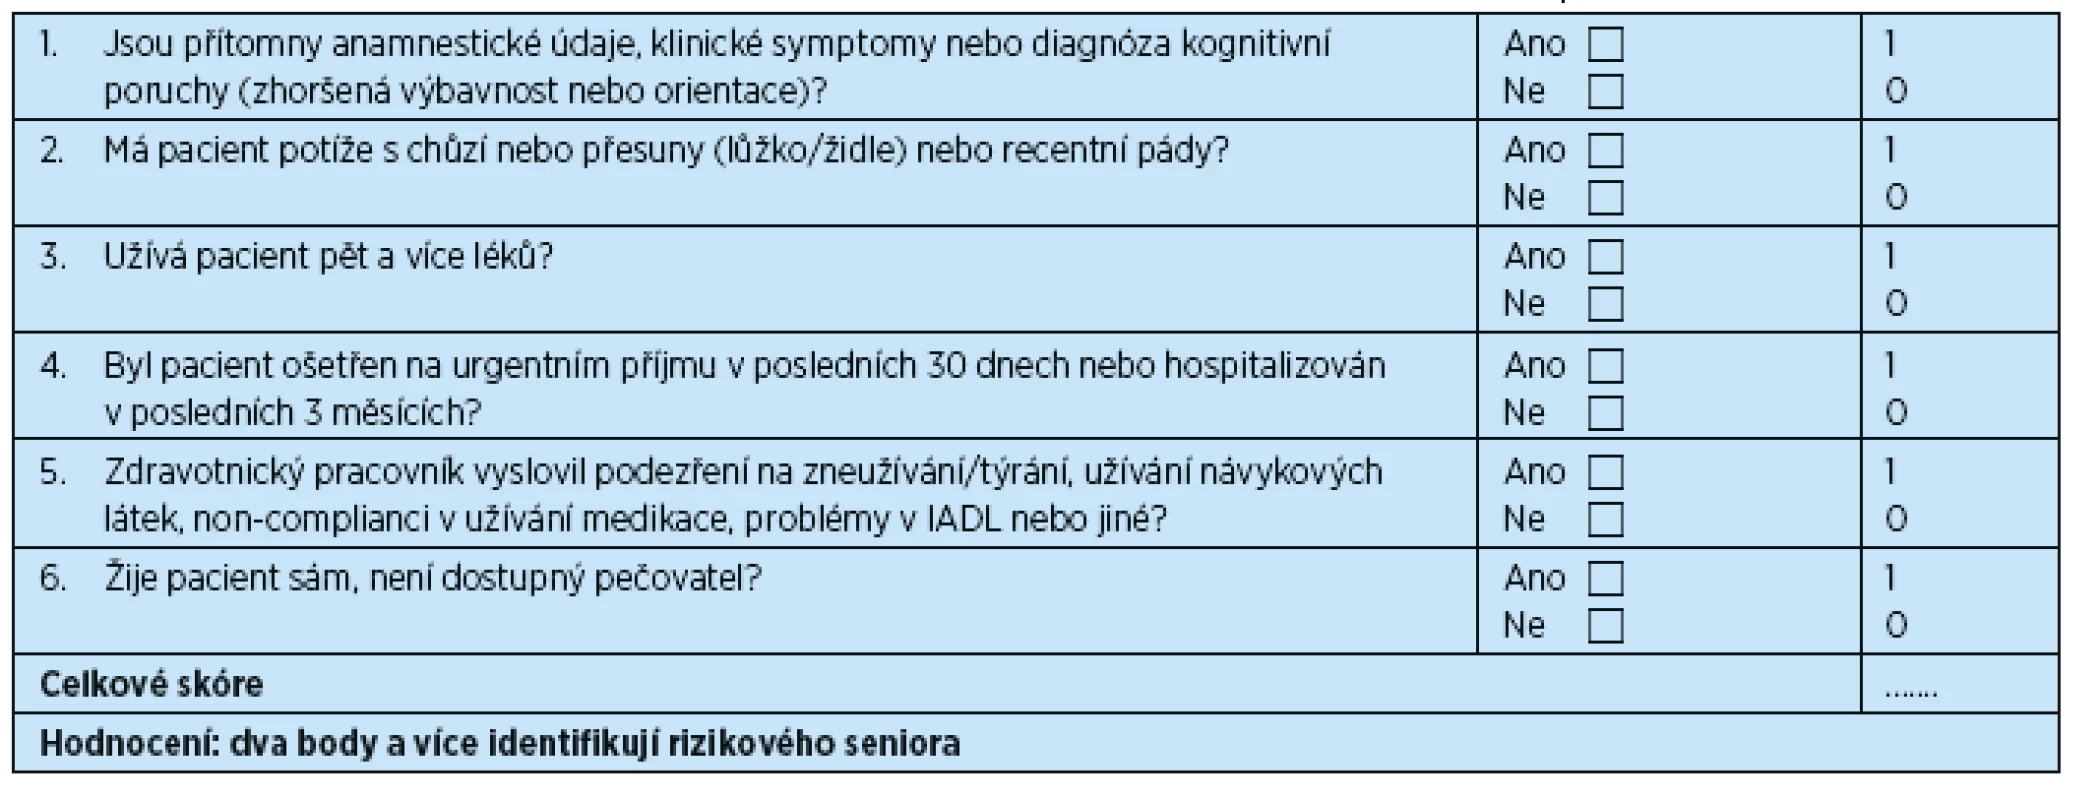 TRST “Triage Risk Stratification Tool” (nástroj pro triage pacientů a stratifikaci rizika), česká verze 2014